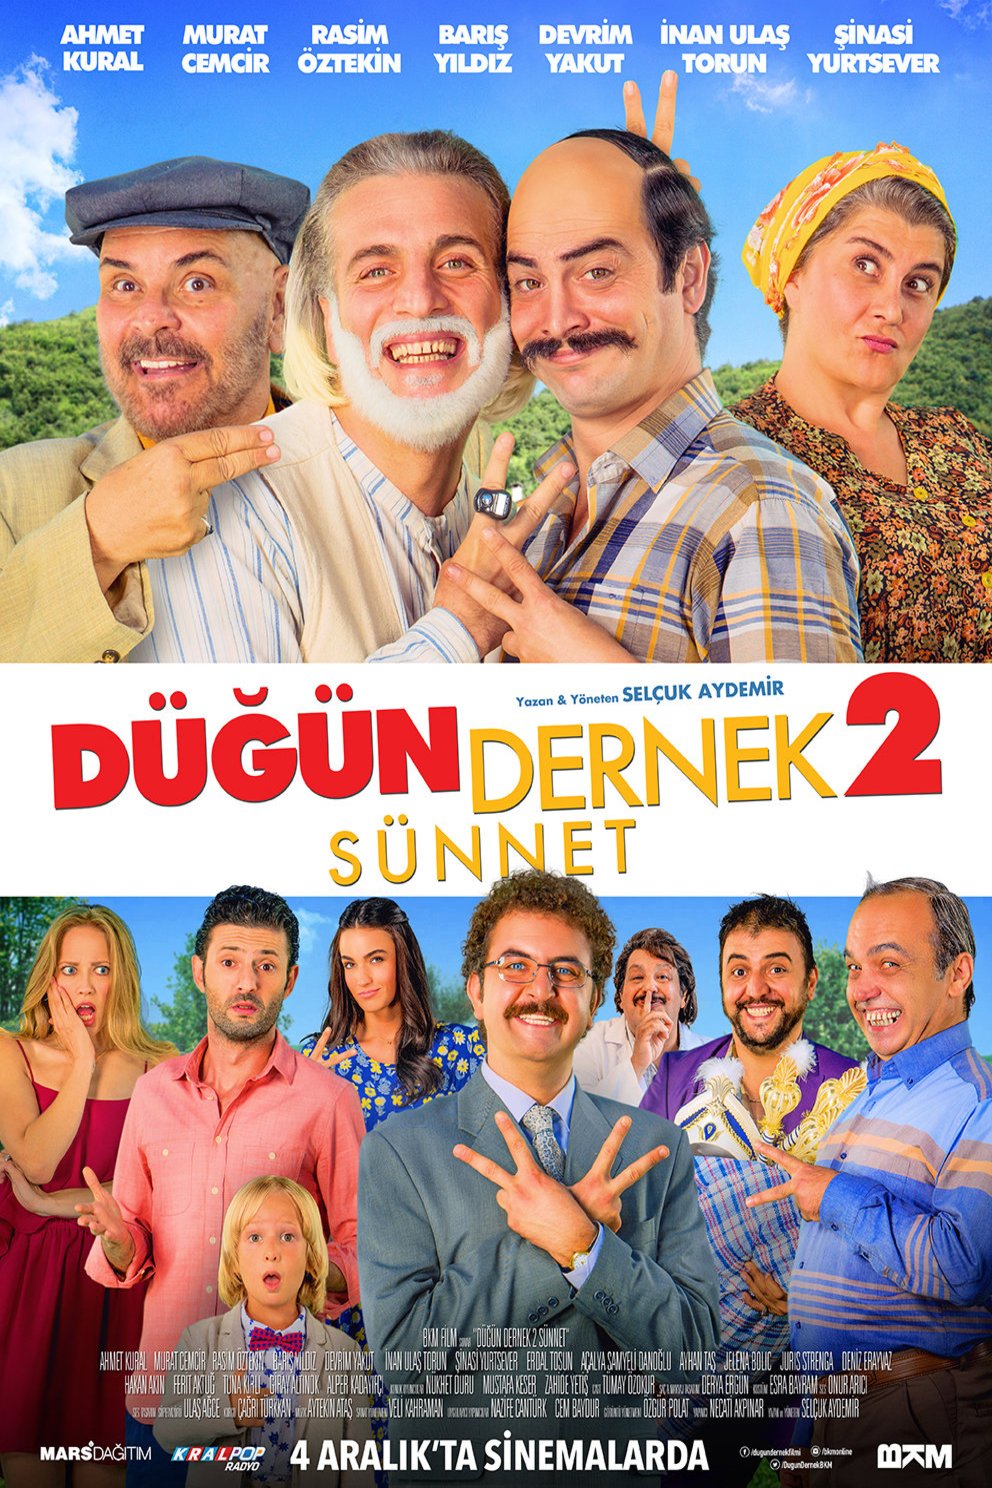 Turkish poster of the movie Dügün Dernek 2: Sünnet